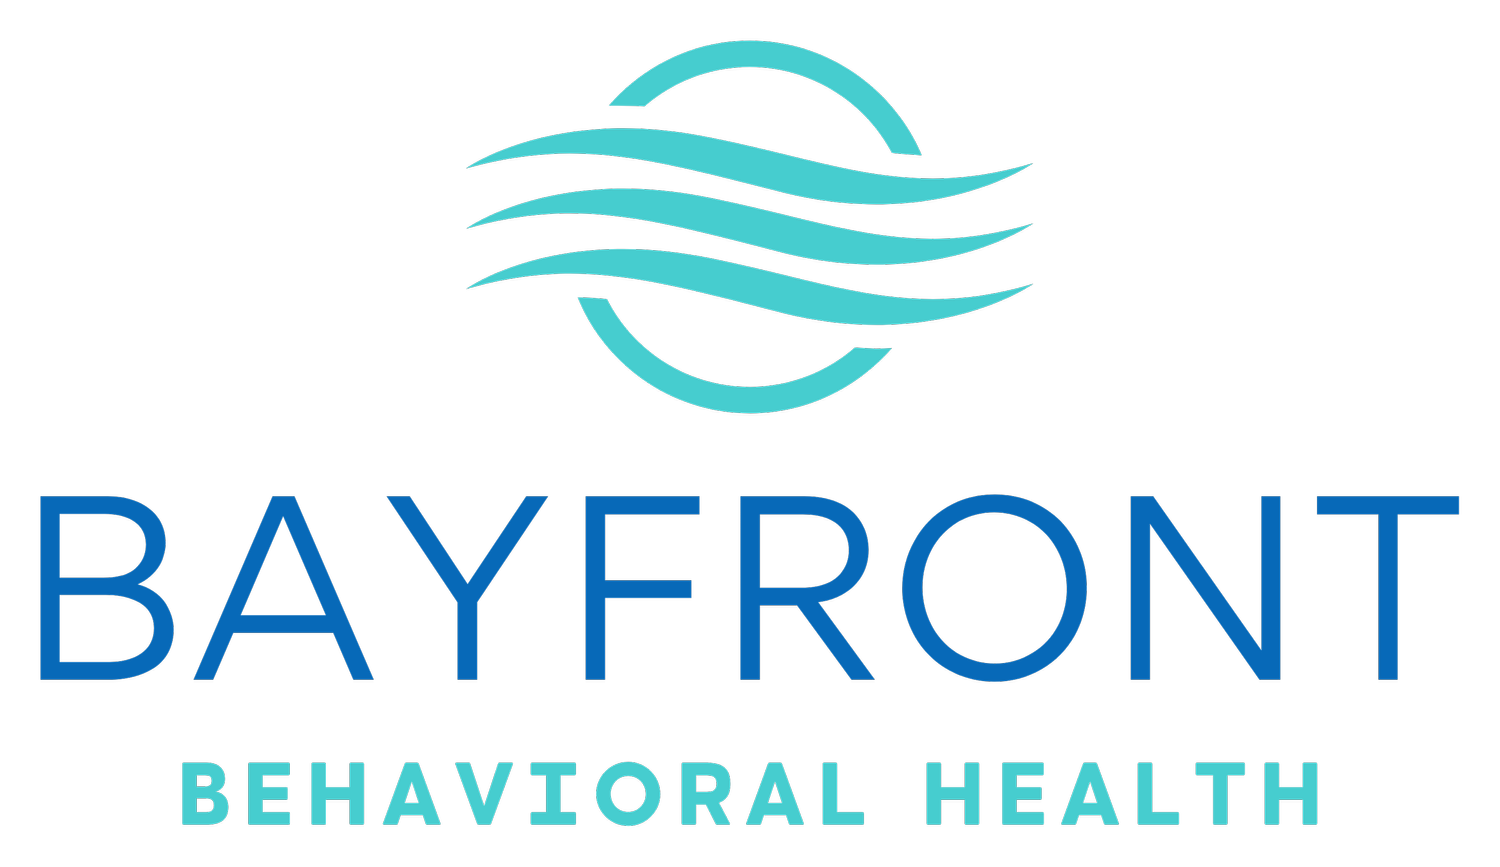 Bayfront Behavioral Health